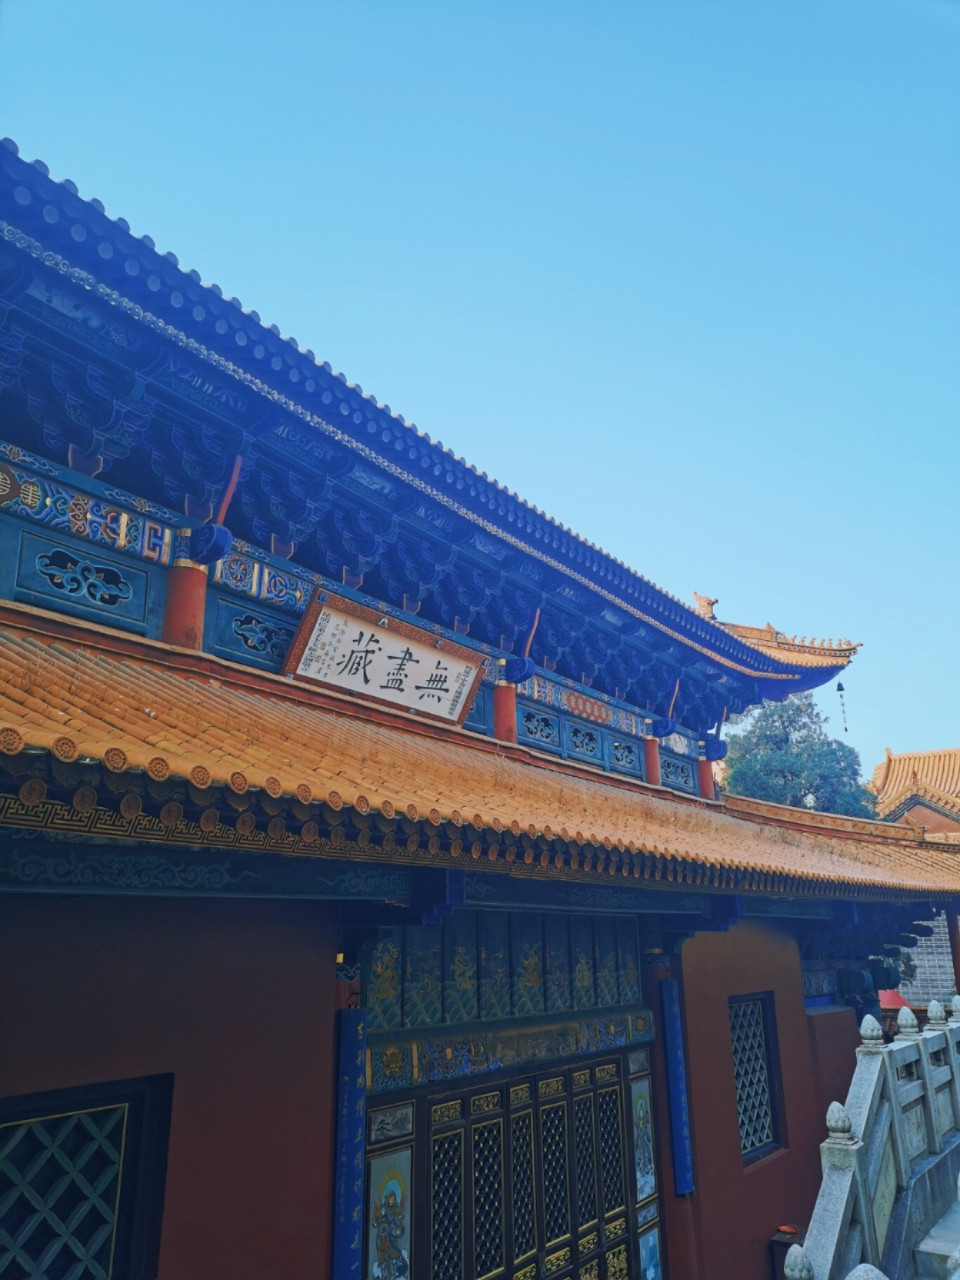 圆通寺,位于昆明市区内的圆通街,是昆明最古老的佛教寺院之一,已有